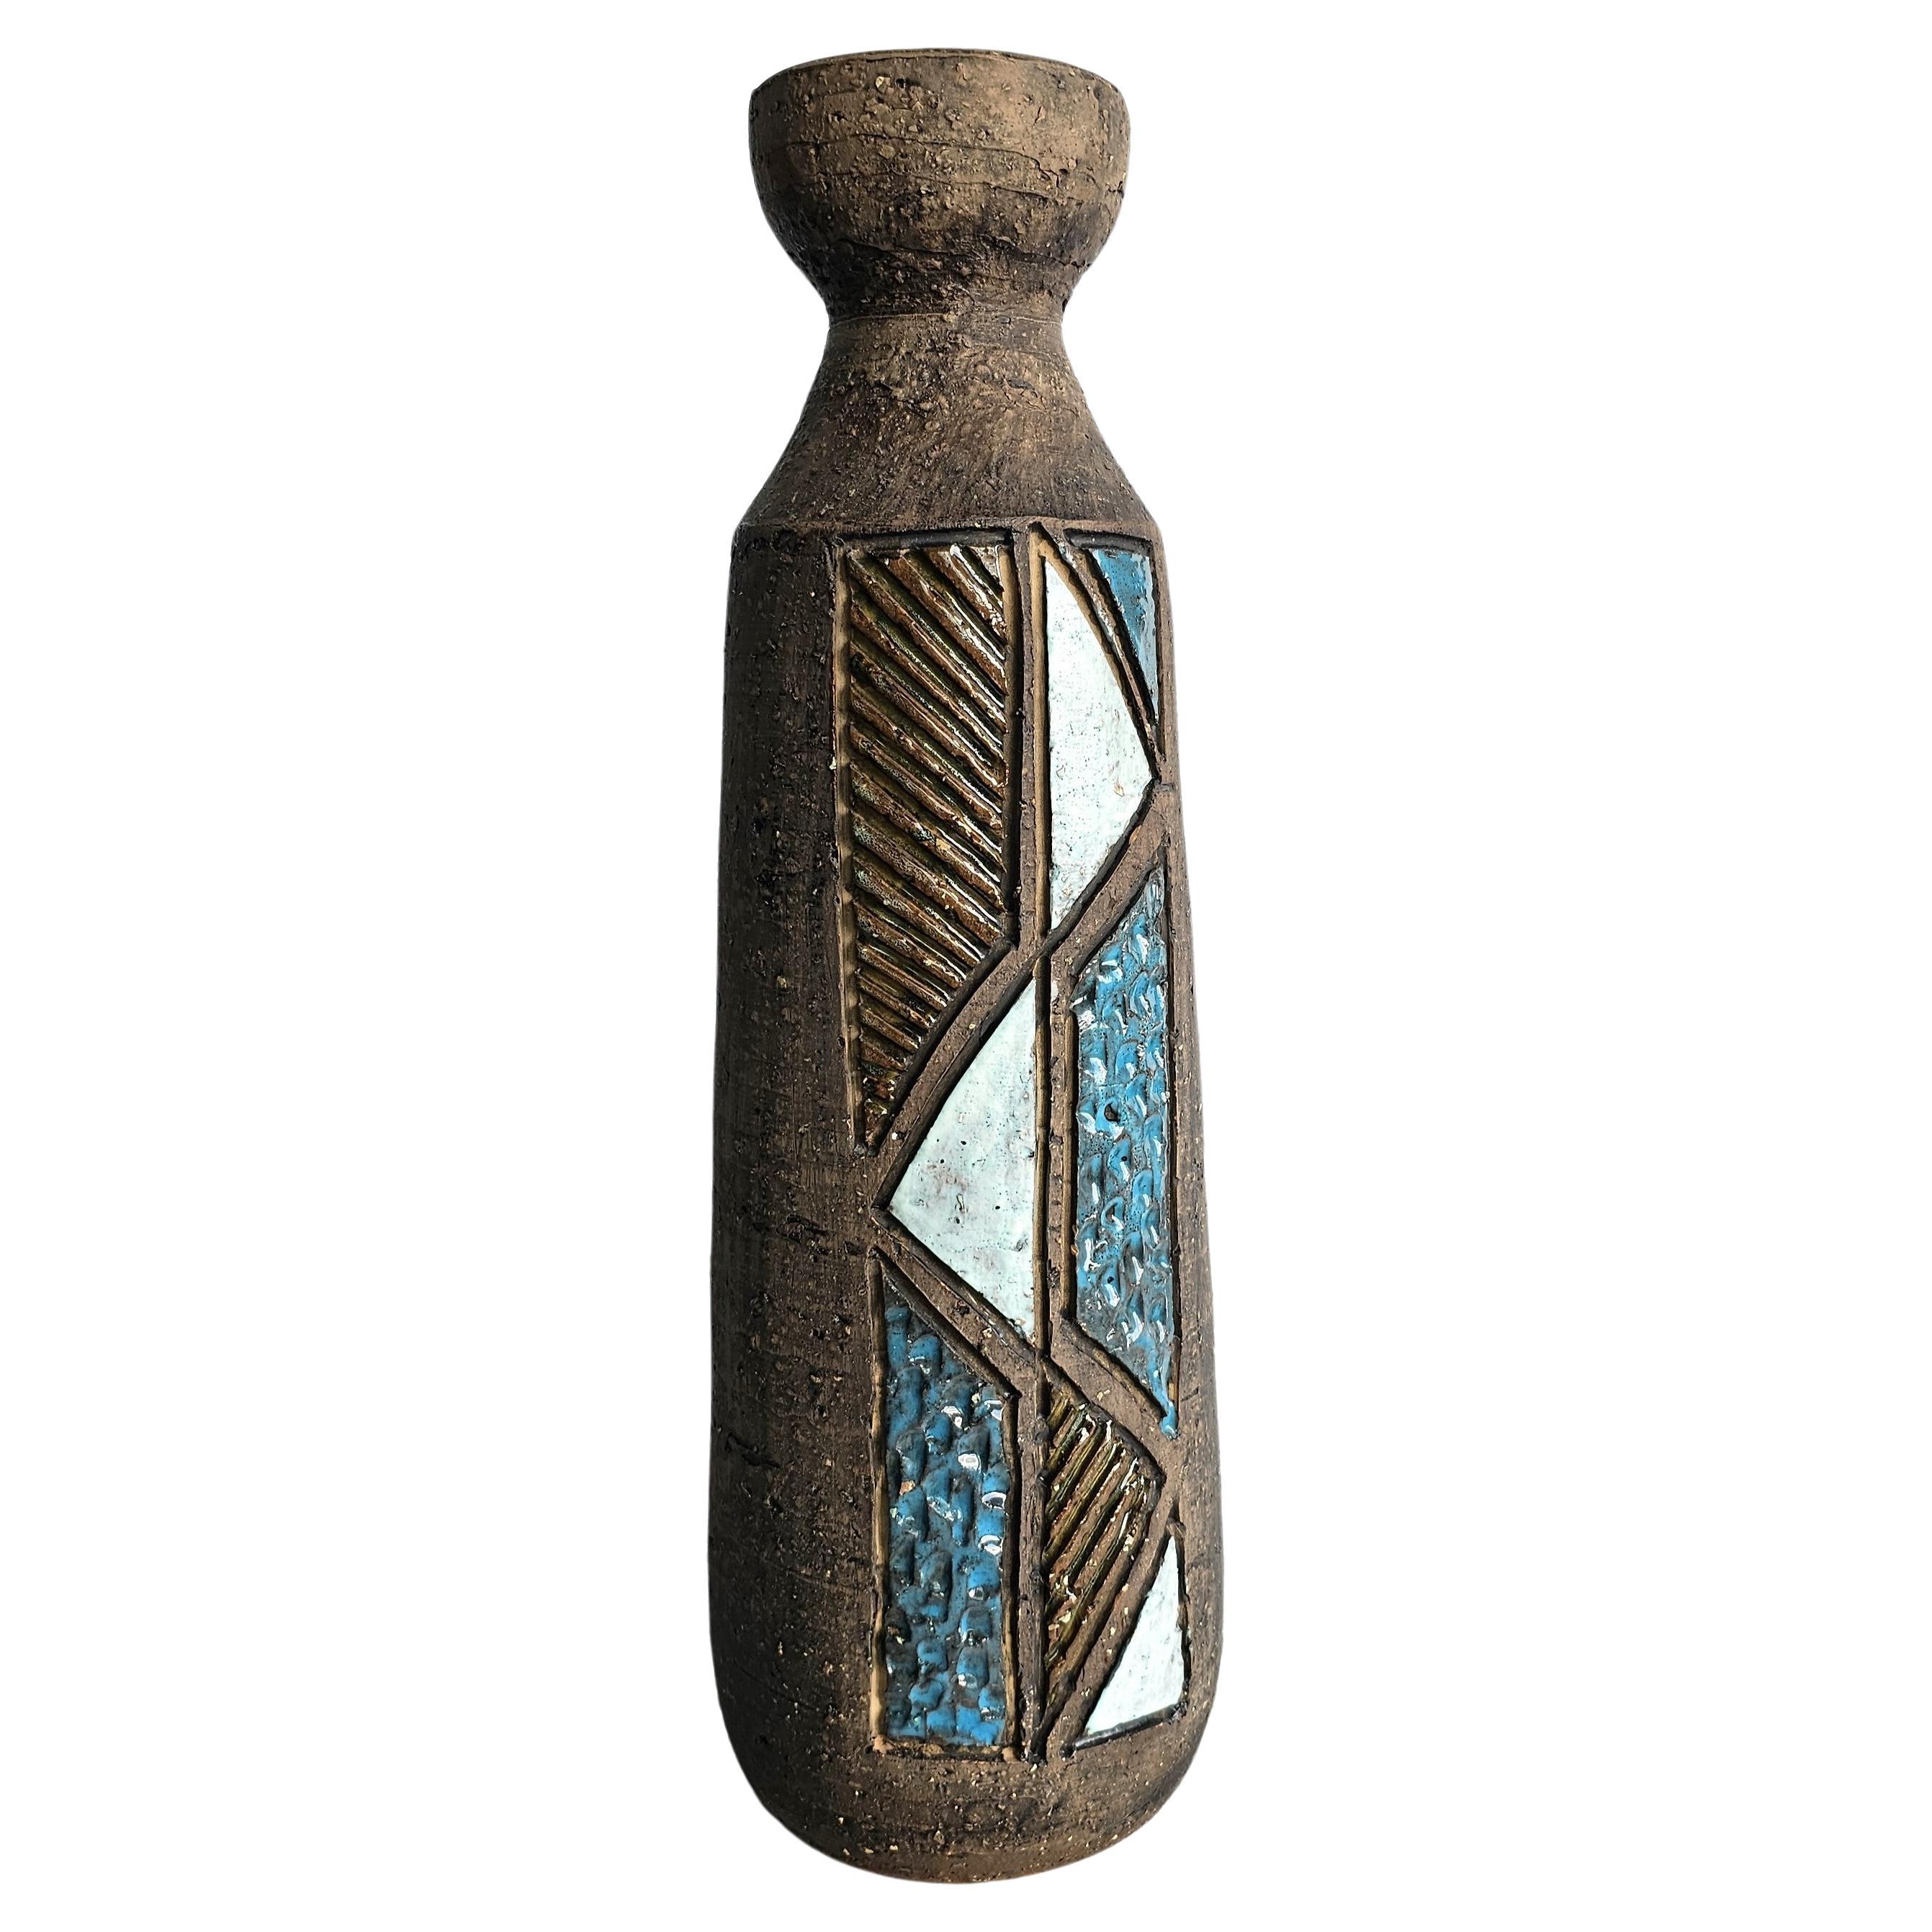 Tilgmans Keramik, vase bouteille sculptural Sgraffito moderniste suédois du milieu du siècle dernier